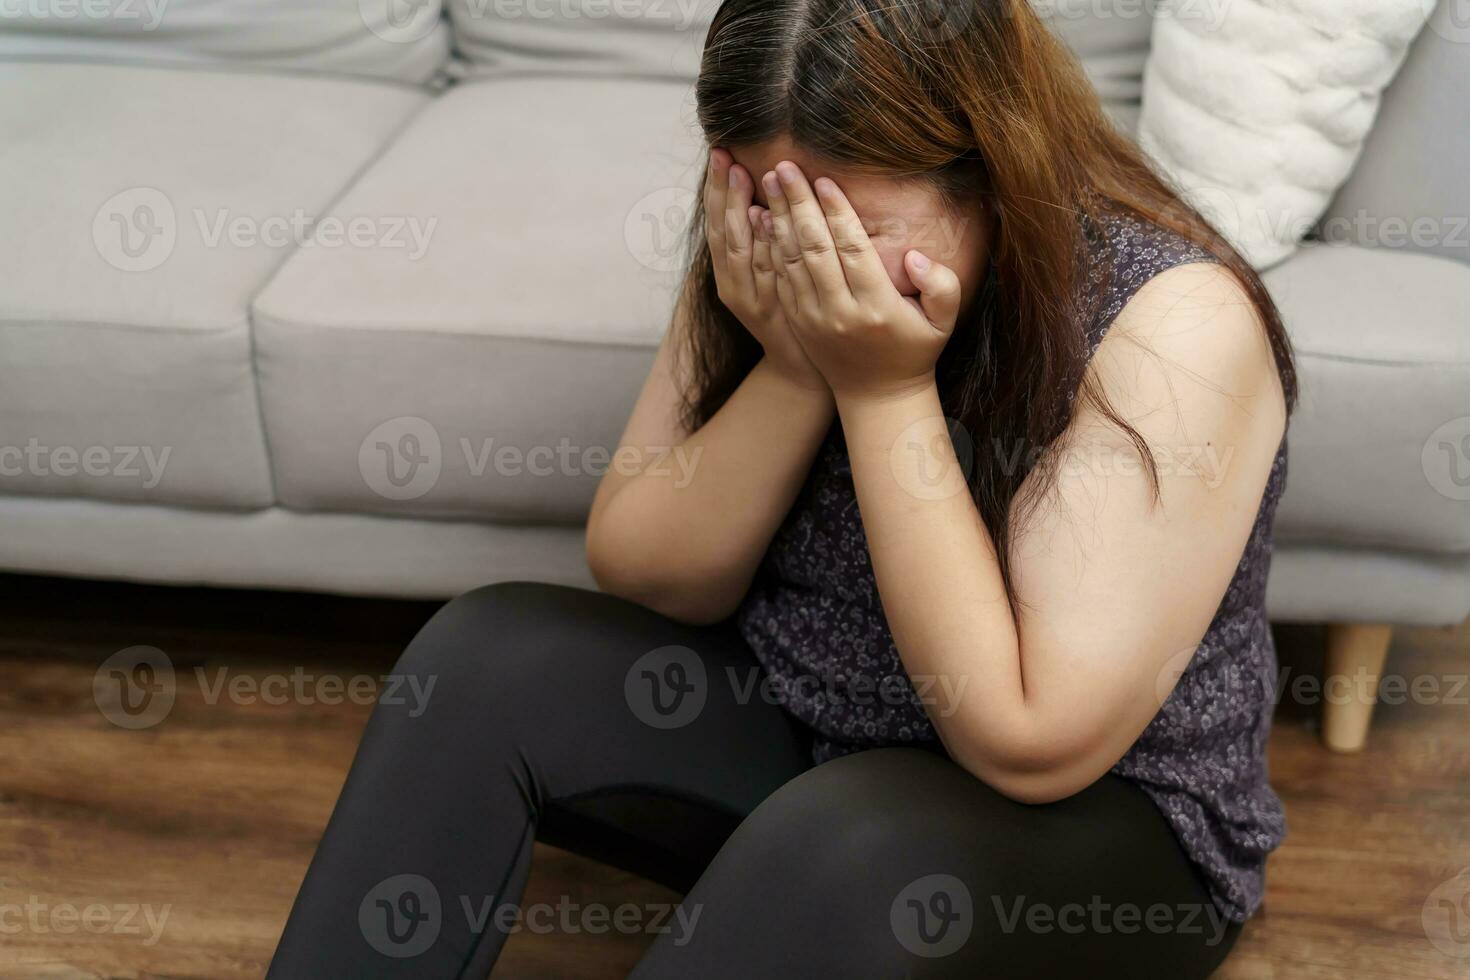 ledsen övervikt plus storlek kvinna tänkande handla om problem på soffa upprörd flicka känsla ensam och ledsen från dålig relation eller deprimerad kvinna oordning mental hälsa foto